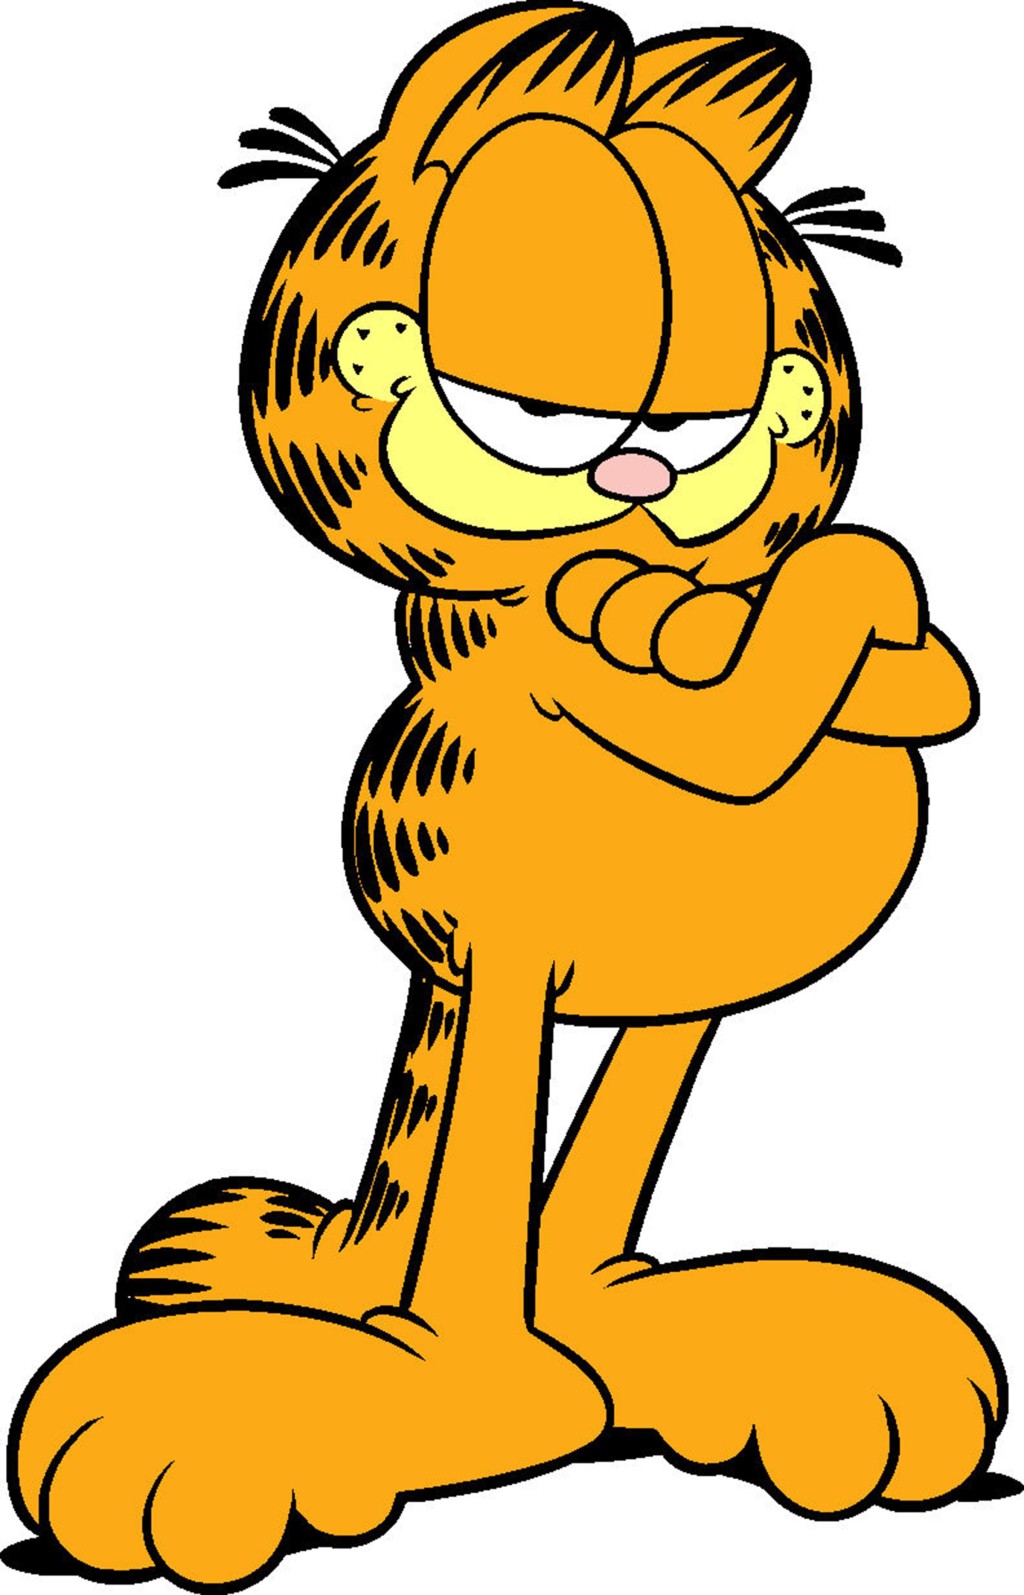 Garfield (character) | Garfield Fanon Wiki | Fandom